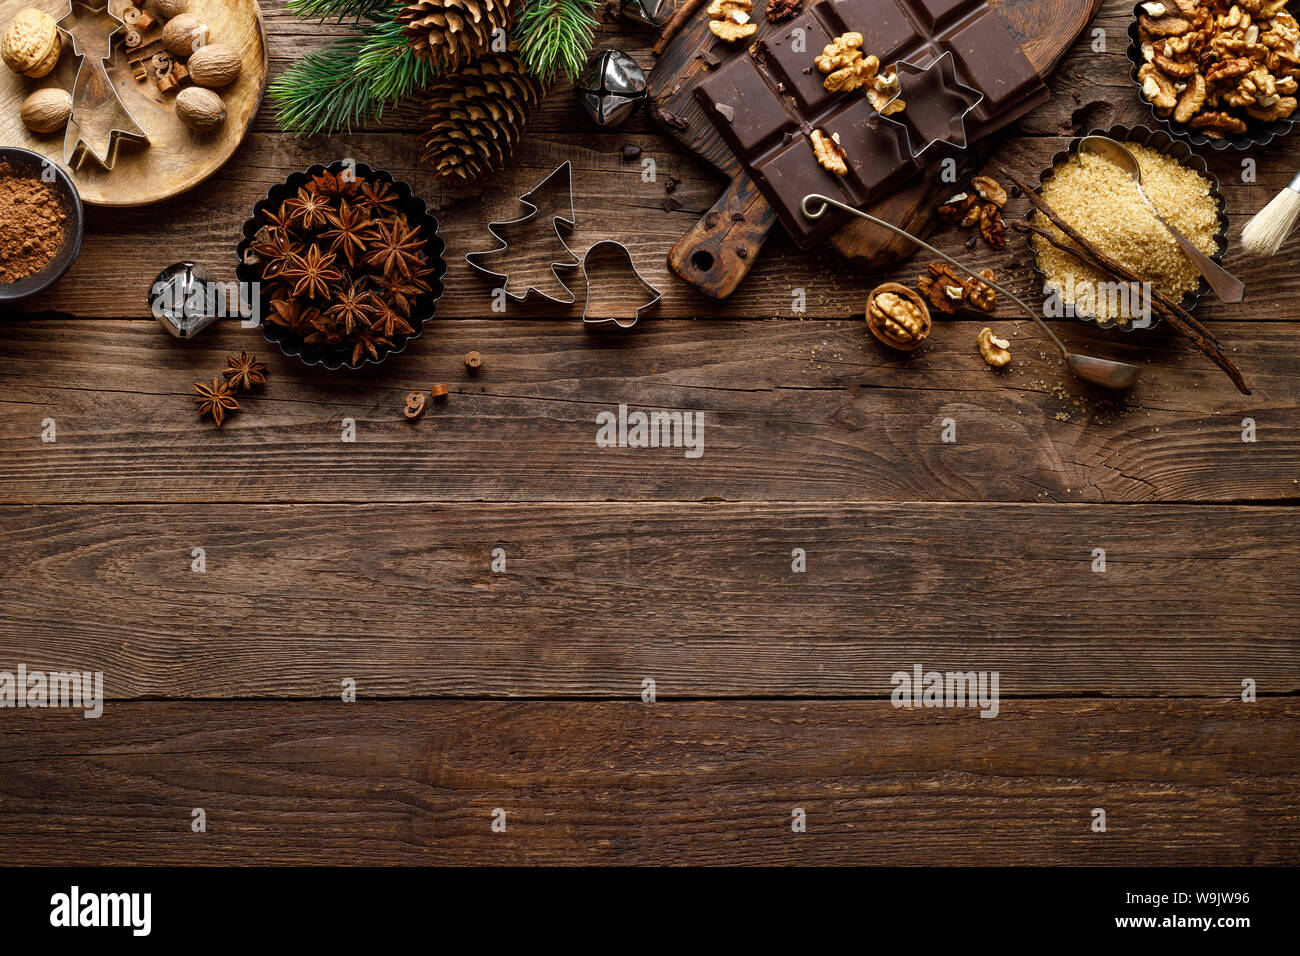 Weihnachten oder Silvester kulinarisch rustikalen Holzmöbeln Hintergrund mit Zutaten zum Kochen festliche Gerichte, Weihnachten backen. Urlaub kochen Rahmen für Noel Stockfoto